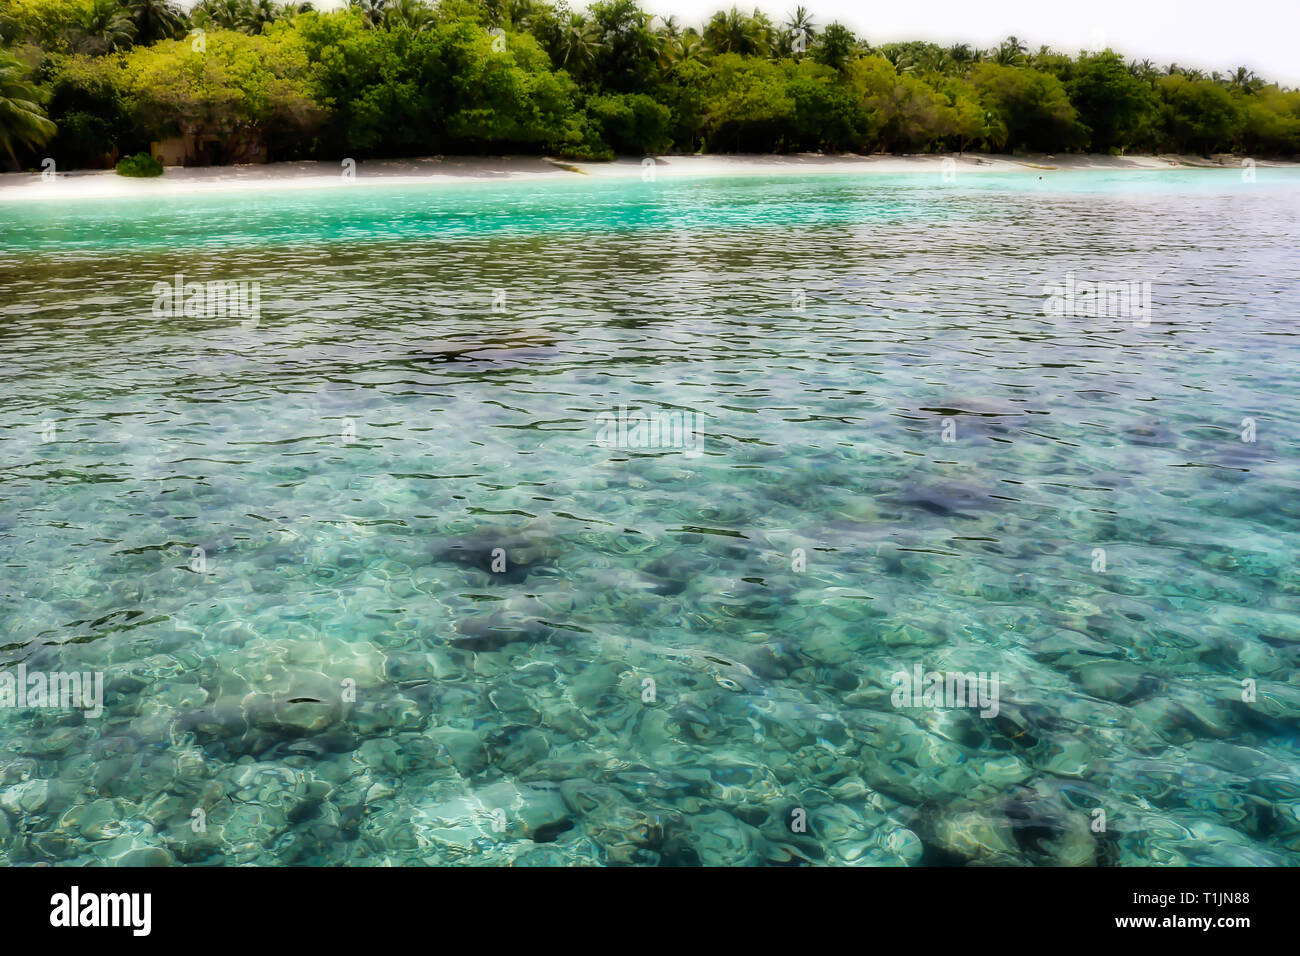 Cette image montre les récifs à l'eau claire en face d'une île dans les Maldives Banque D'Images